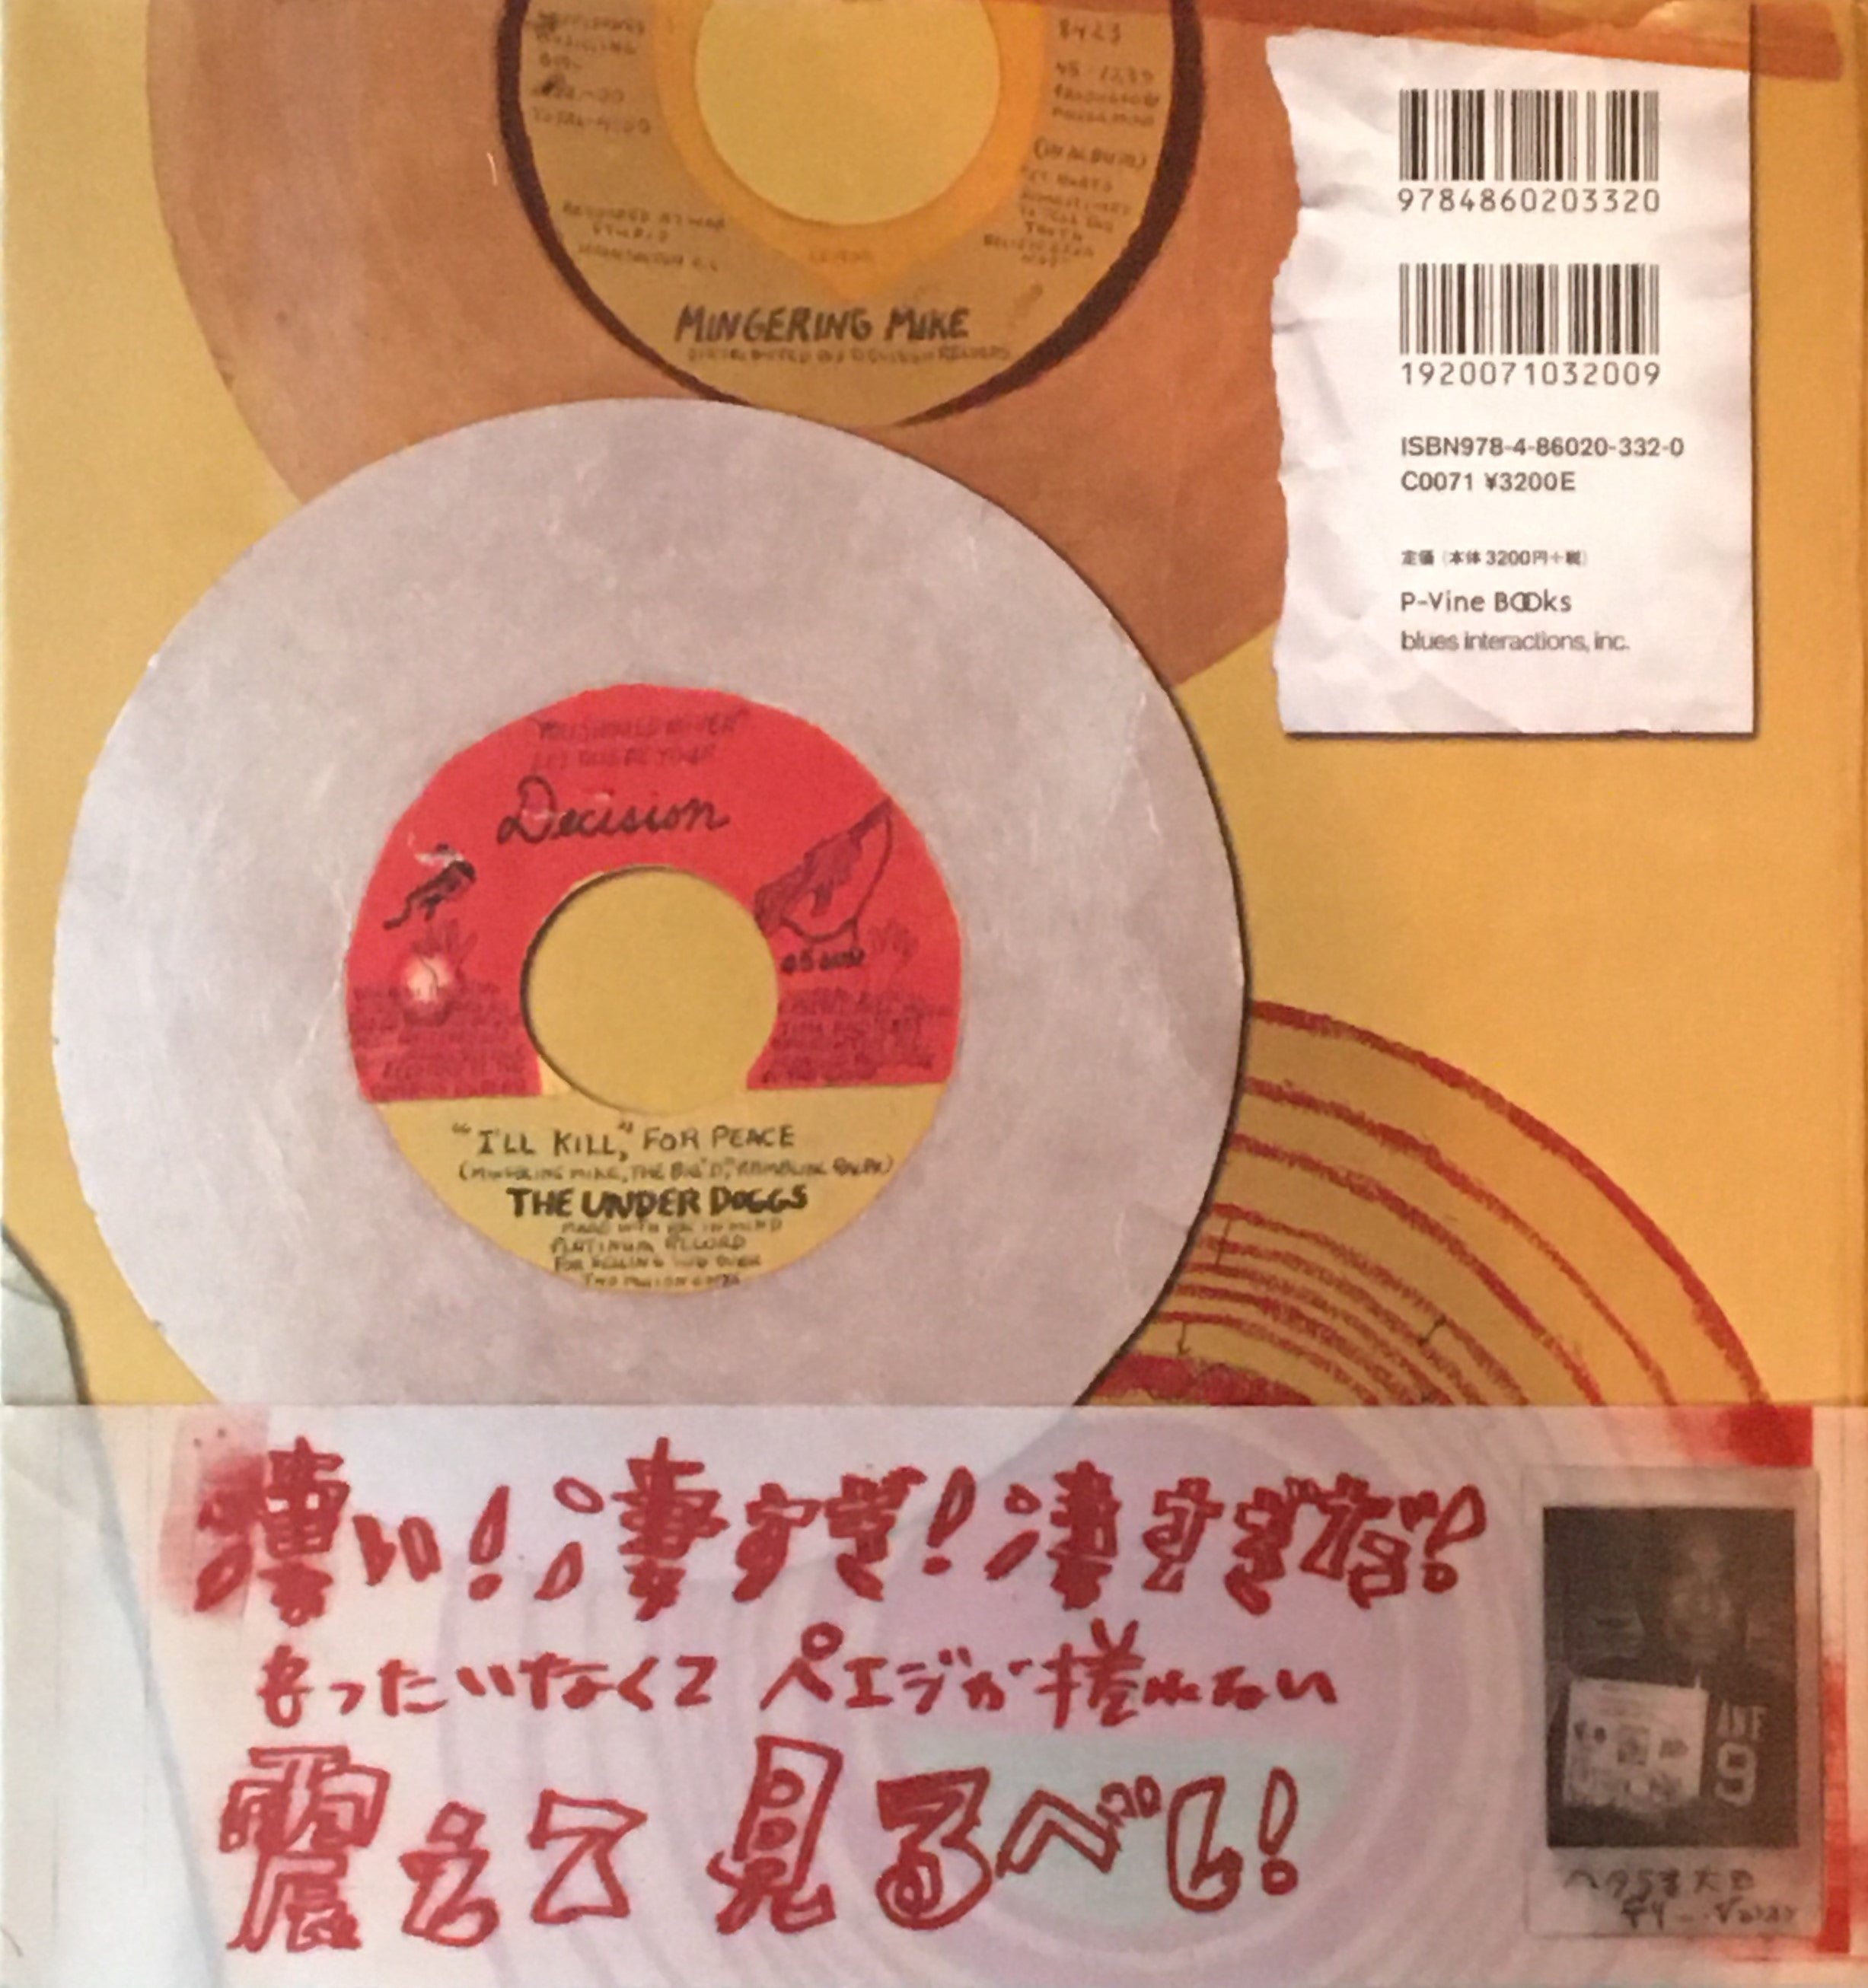 ミンガリング・マイクの妄想レコードの世界 アウトサイダーソウル